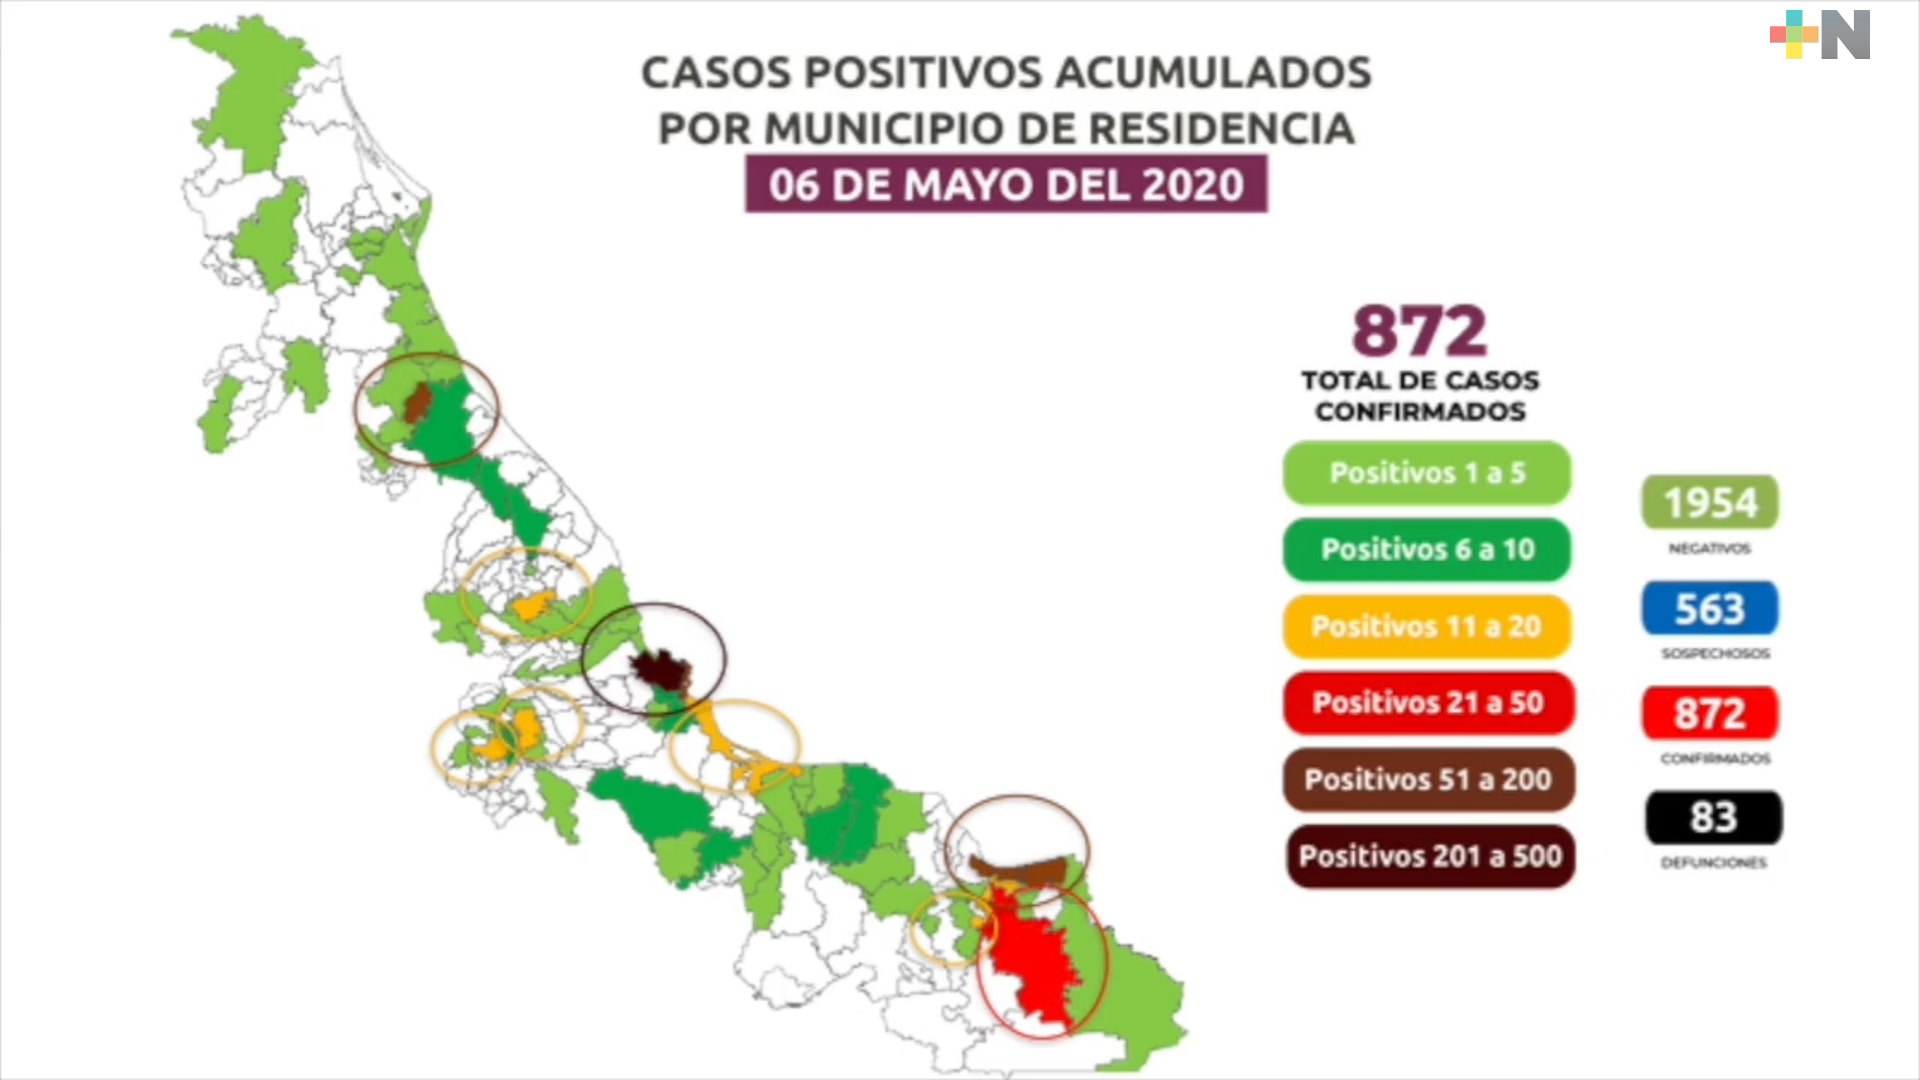 Siguen en ascenso los casos de COVID-19 en Veracruz; hay  872 y 83 muertos